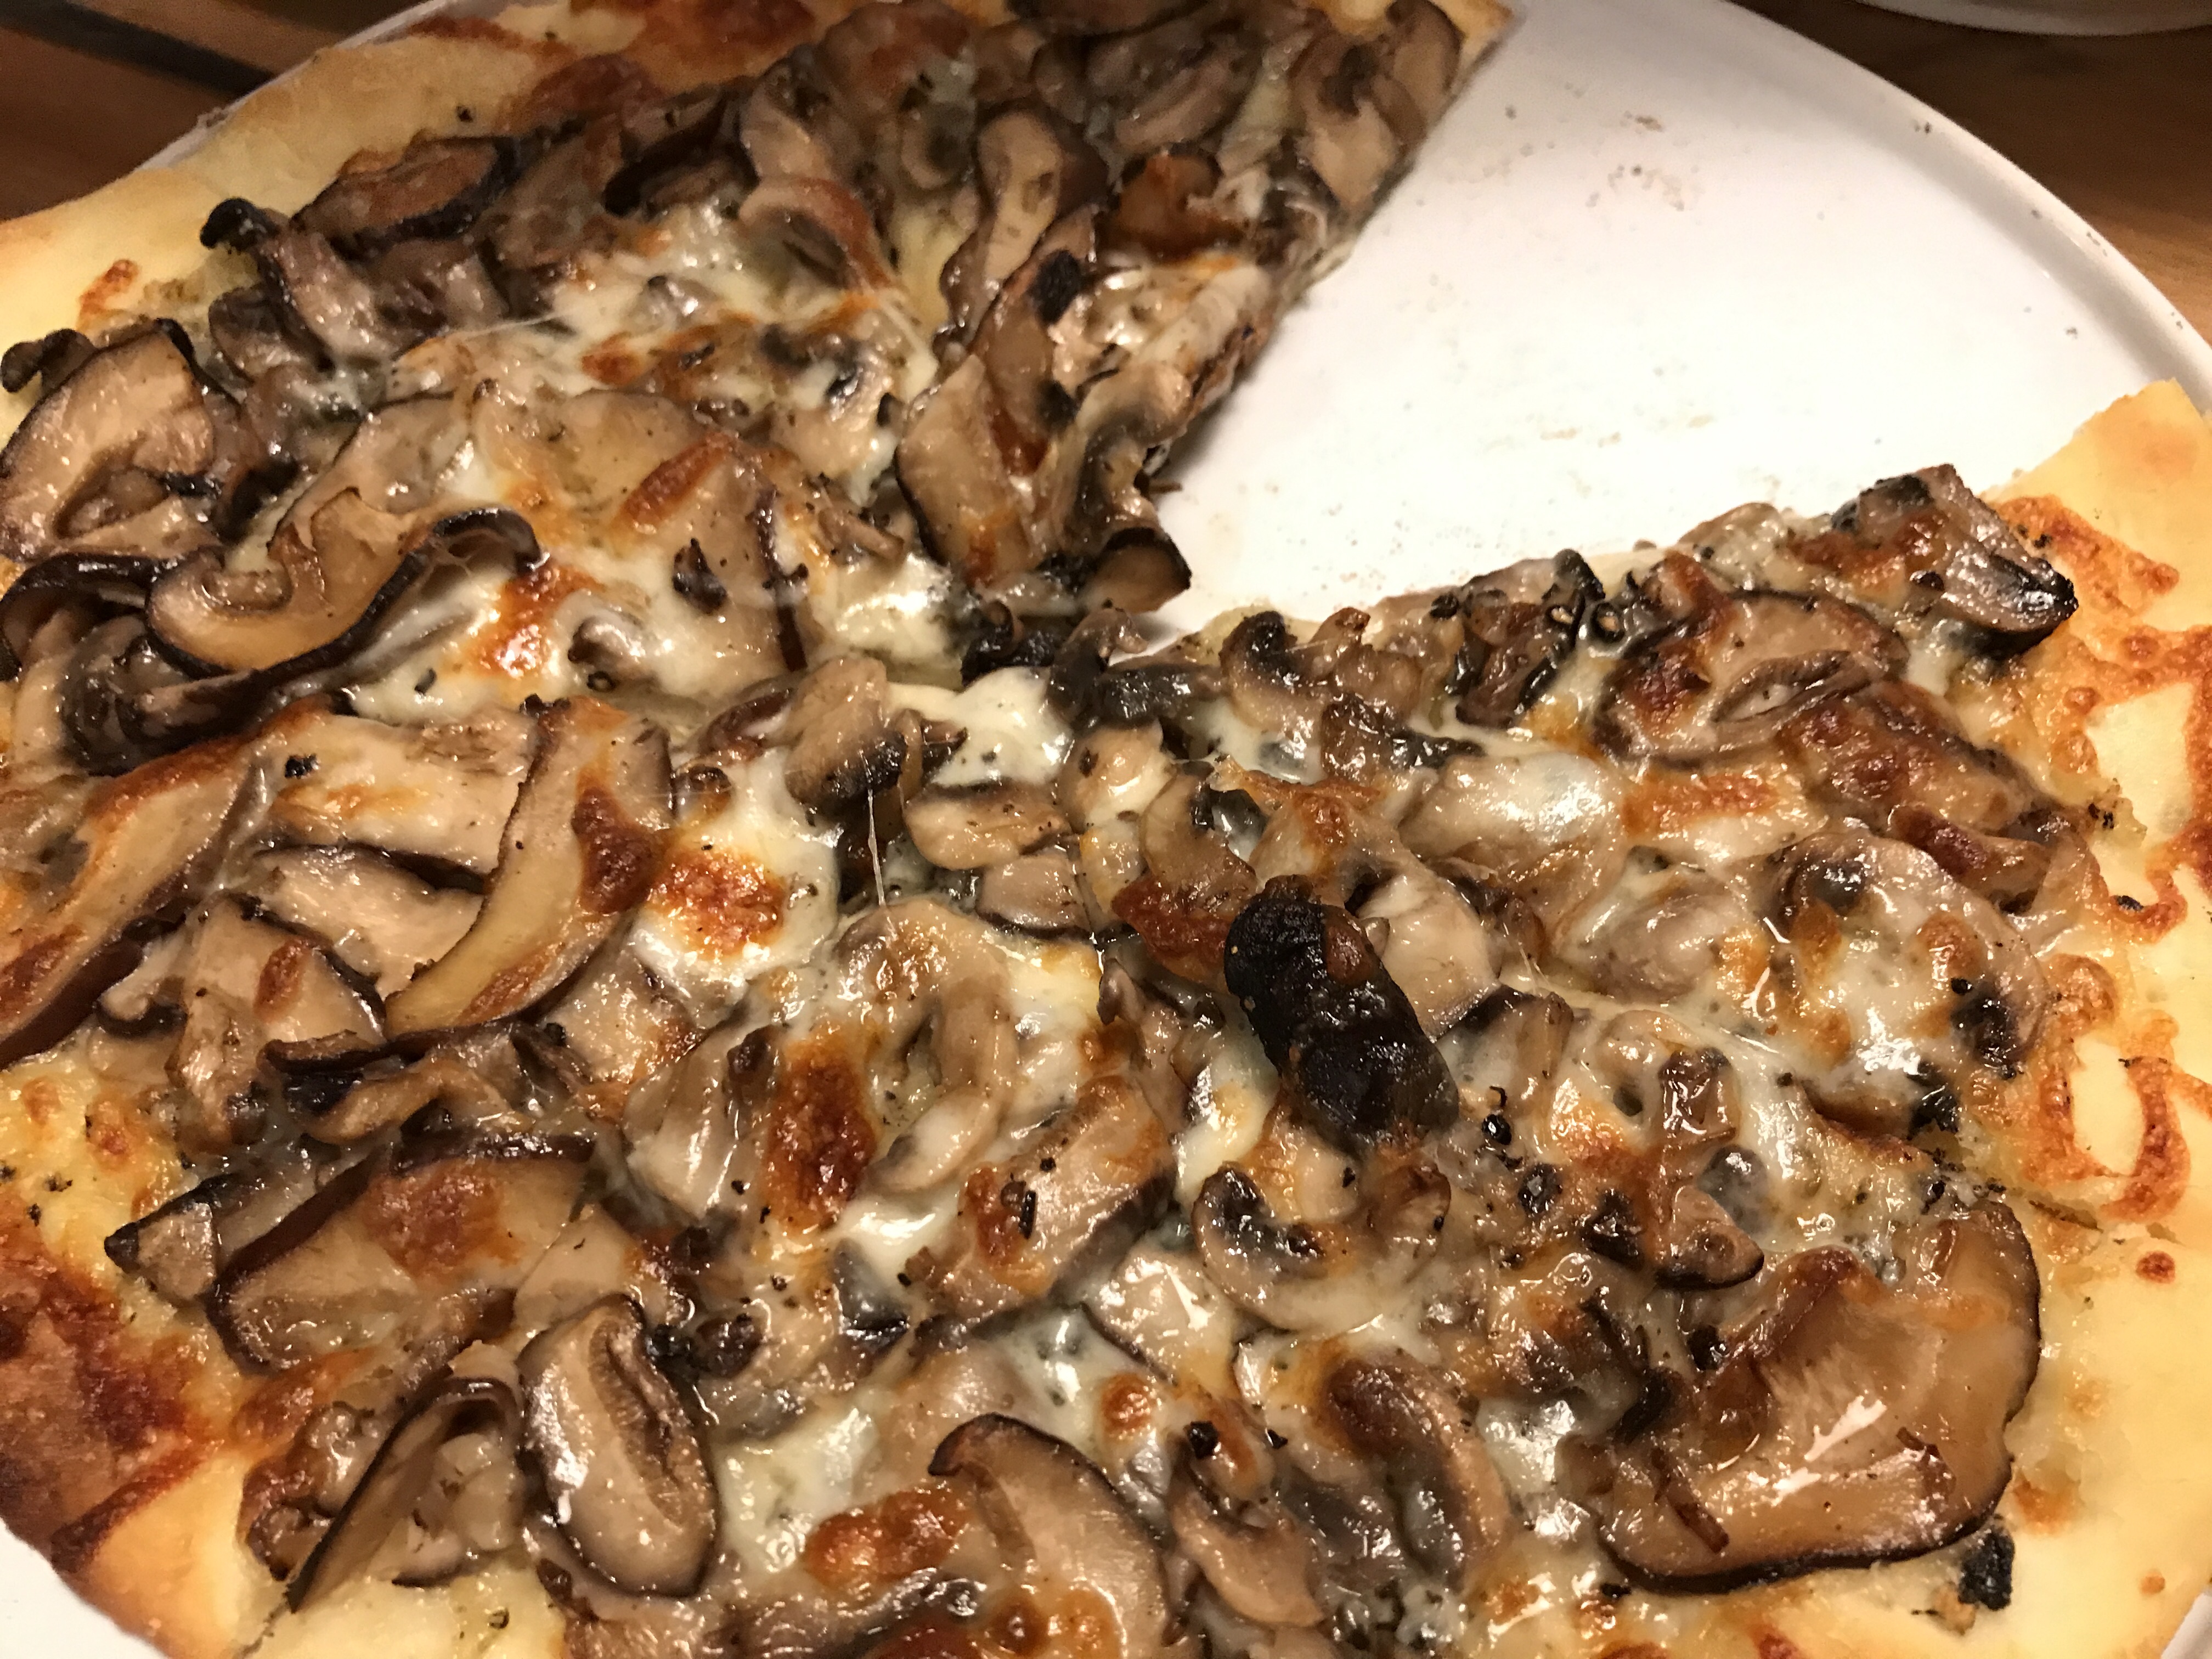 松露酱蘑菇披萨 Pizza with Mushrooms, Mozzarela and Truffle